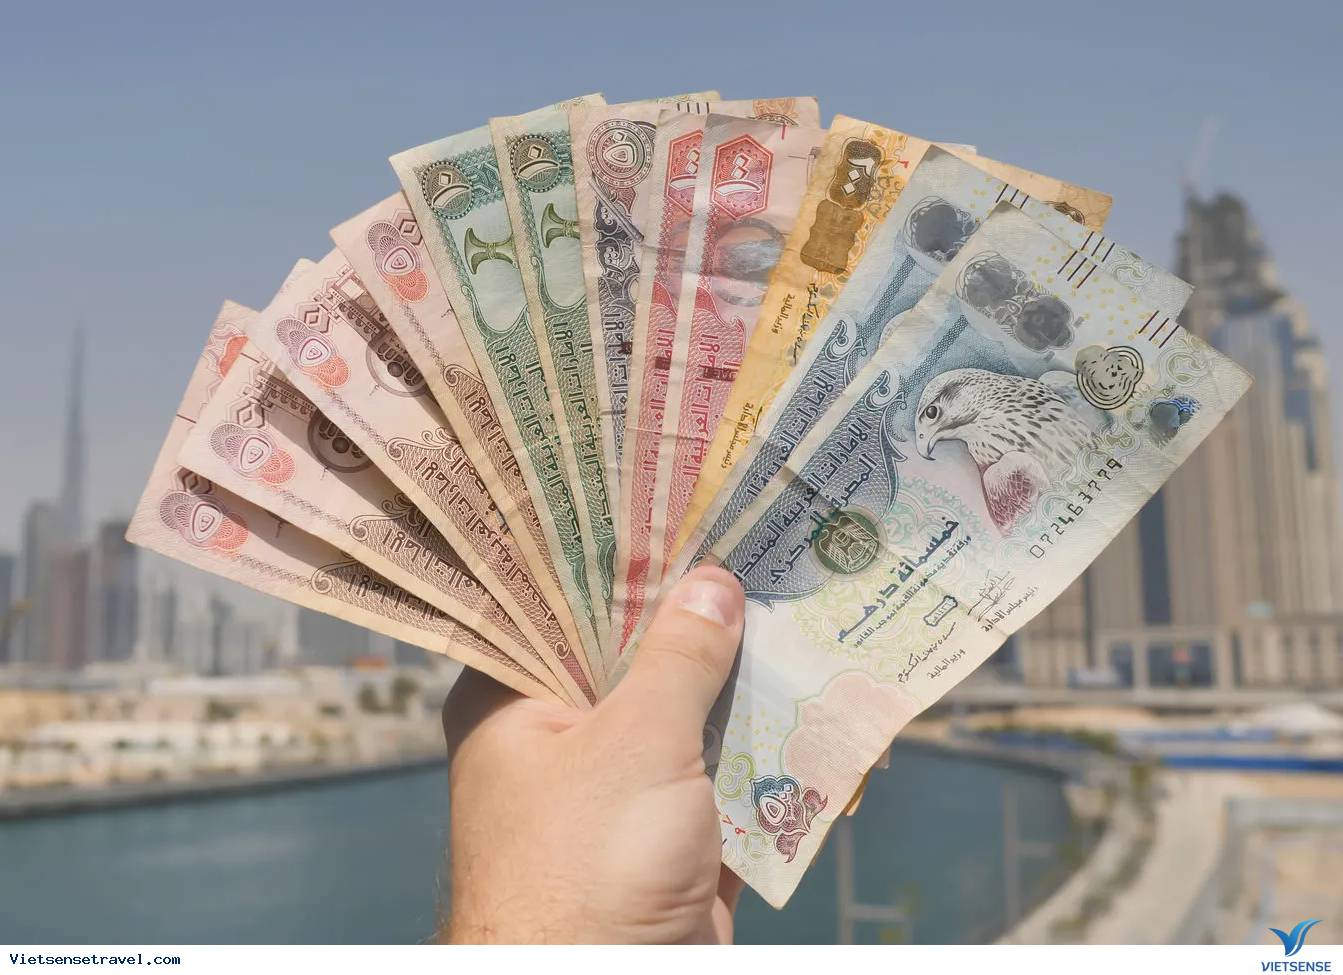 Dirham, Dubai, đổi tiền: Bạn sắp đi du lịch đến Dubai và cần đổi tiền? Xem hình ảnh của chúng tôi để biết quy trình đổi tiền tại Dubai. Chúng tôi sẽ giúp bạn đổi các loại tiền tệ nhanh chóng và dễ dàng.